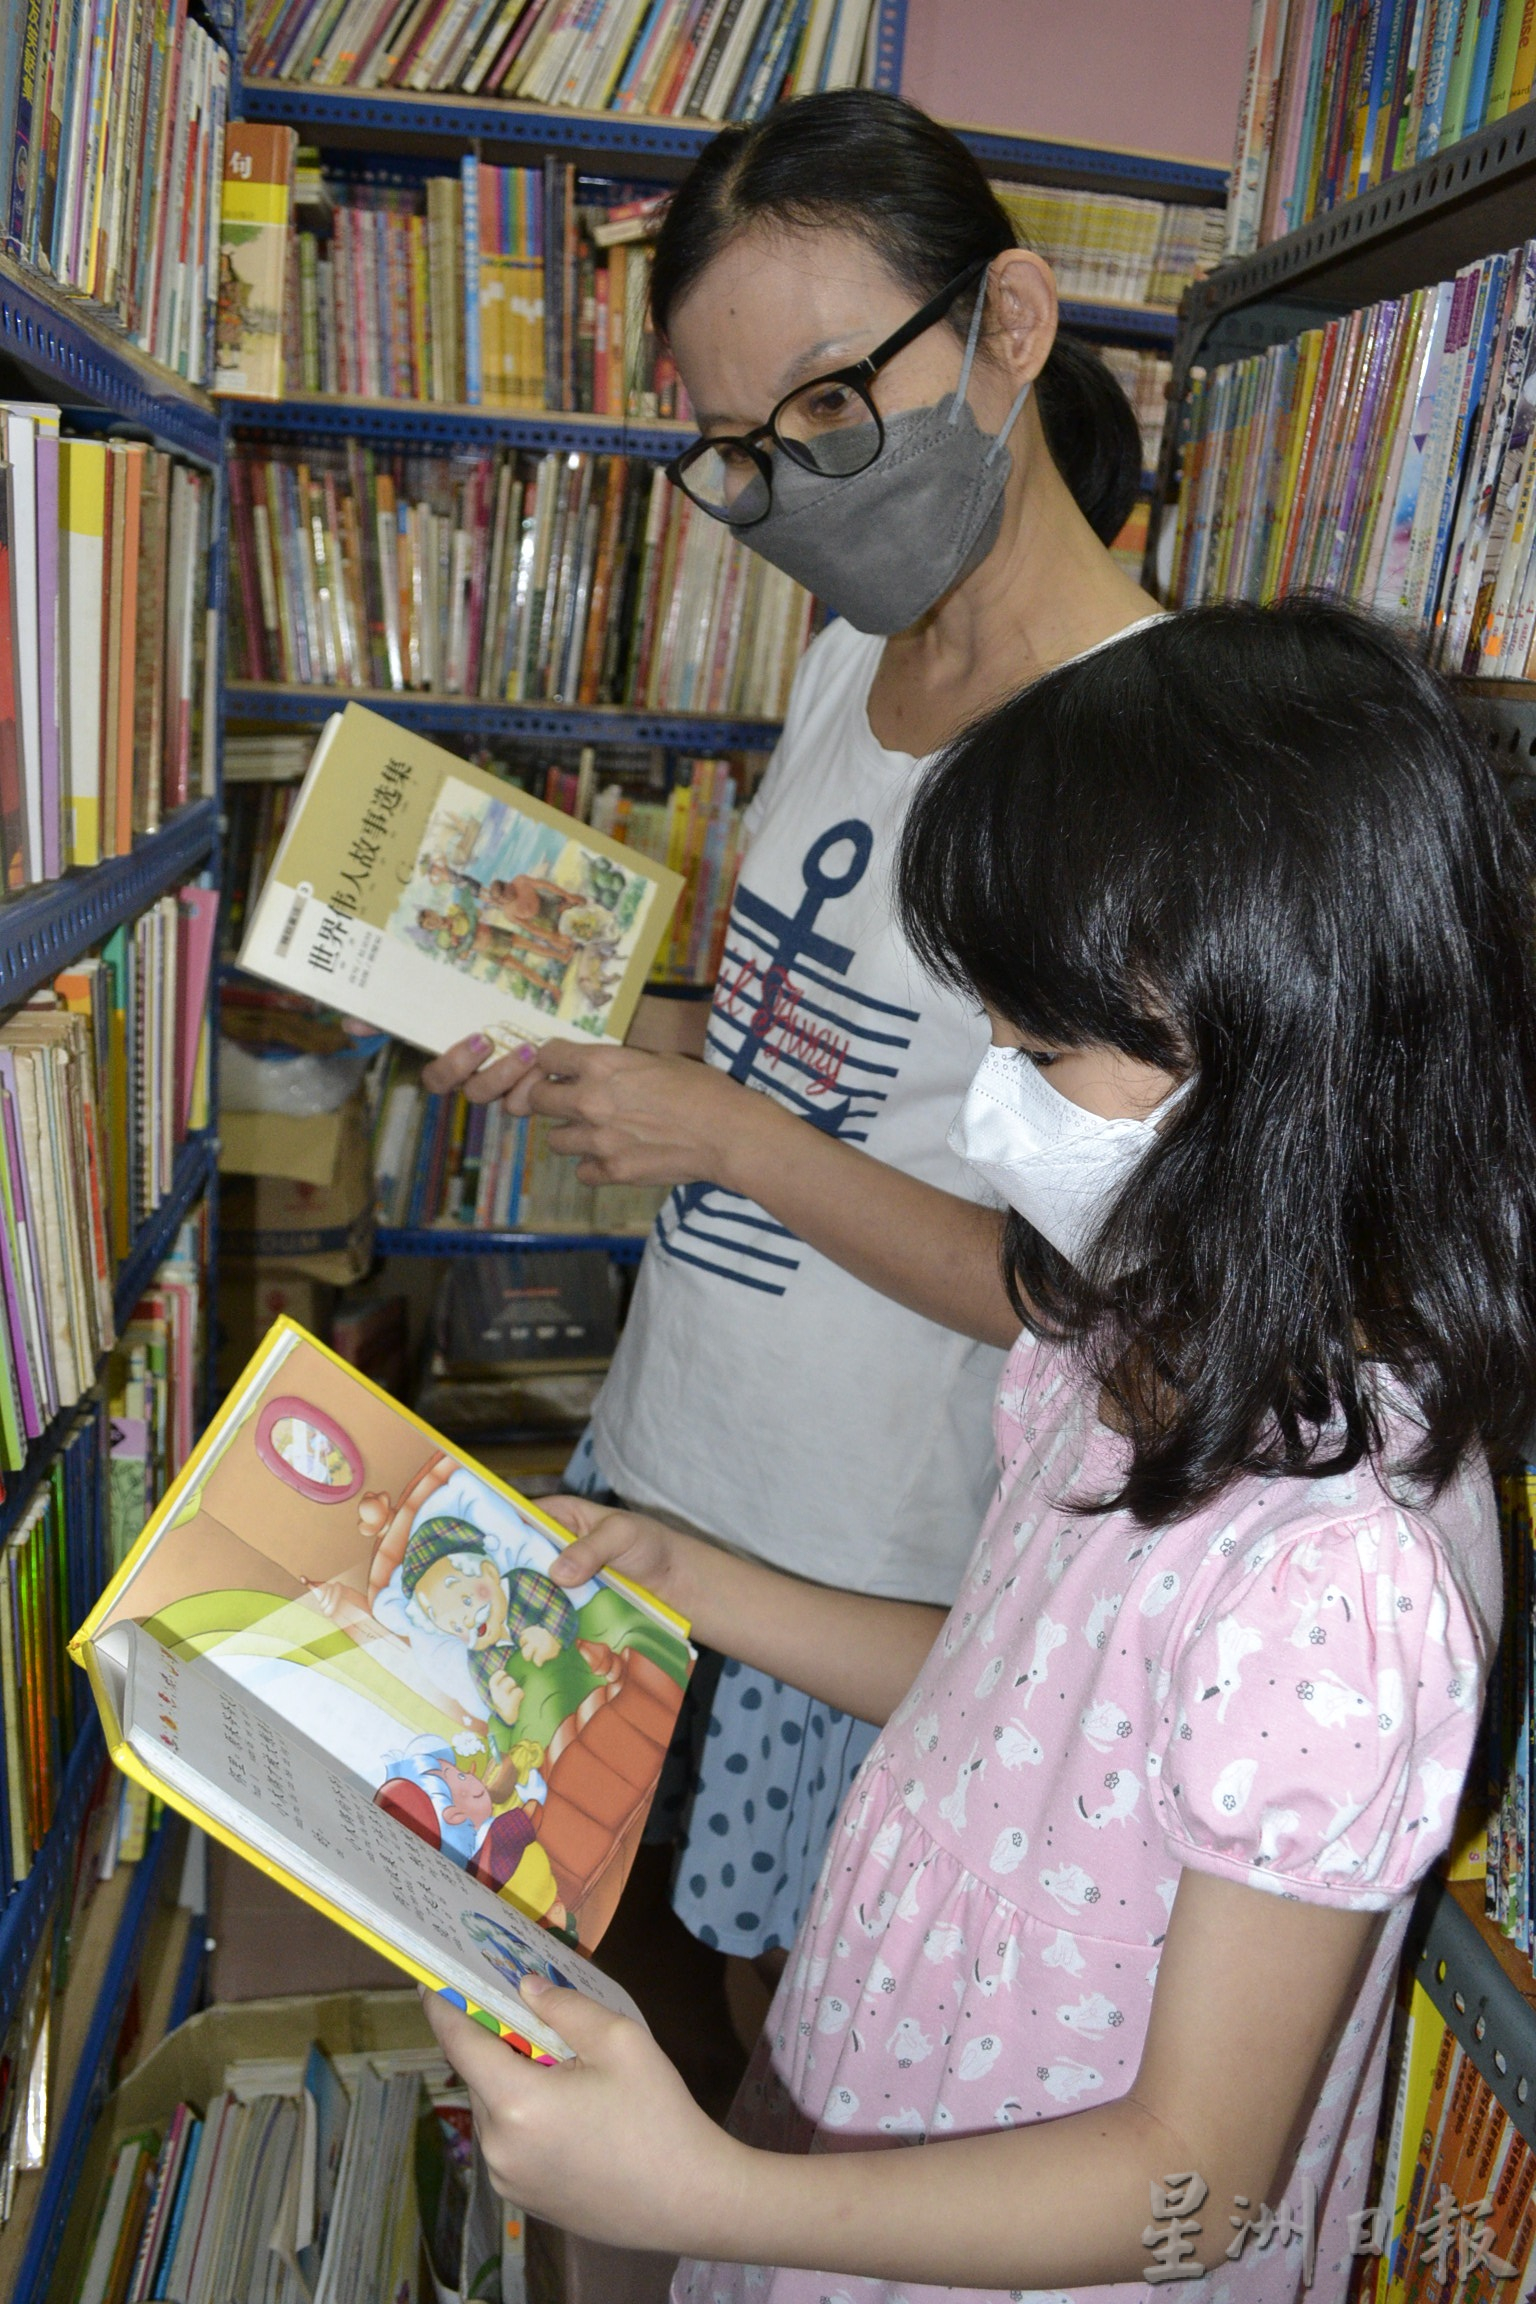 （大北马）天竹坊二手书店提供社区一个方便租借各种书籍提升阅读风气